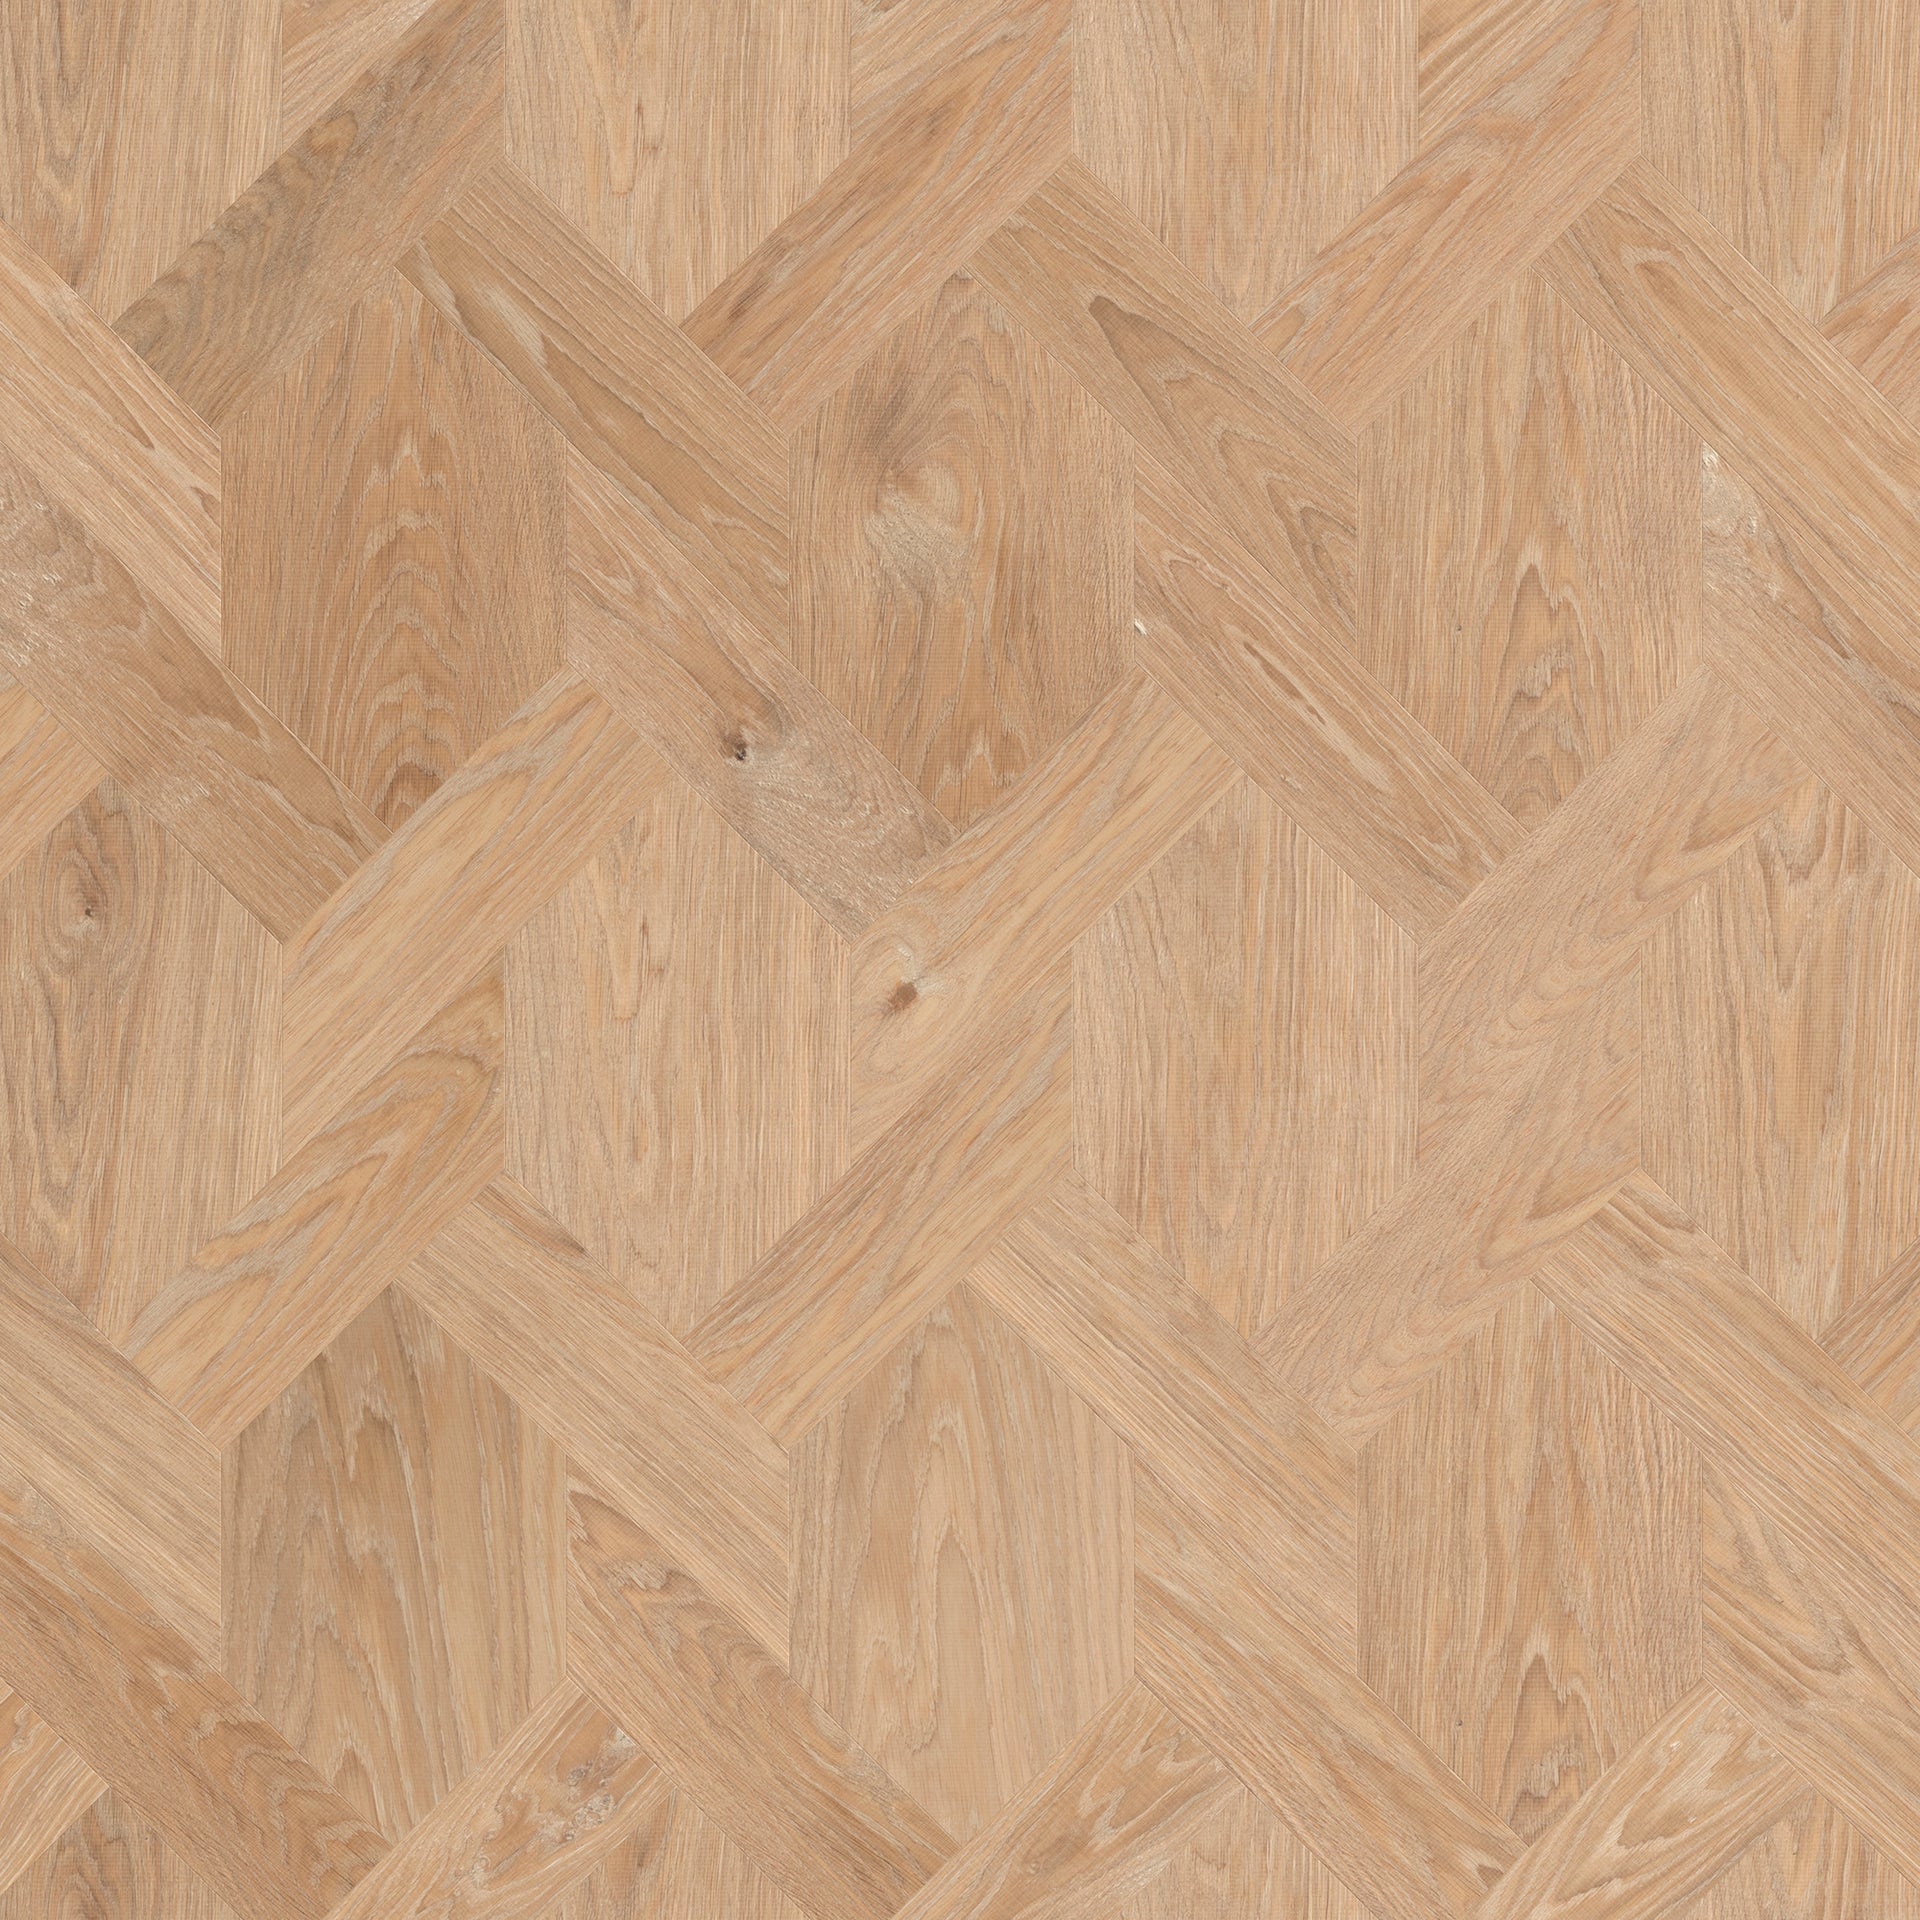 Het Wave patroon zorgt voor een unieke uitstraling op de vloer. De vloerdelen lijken in elkaar verweven te zitten.